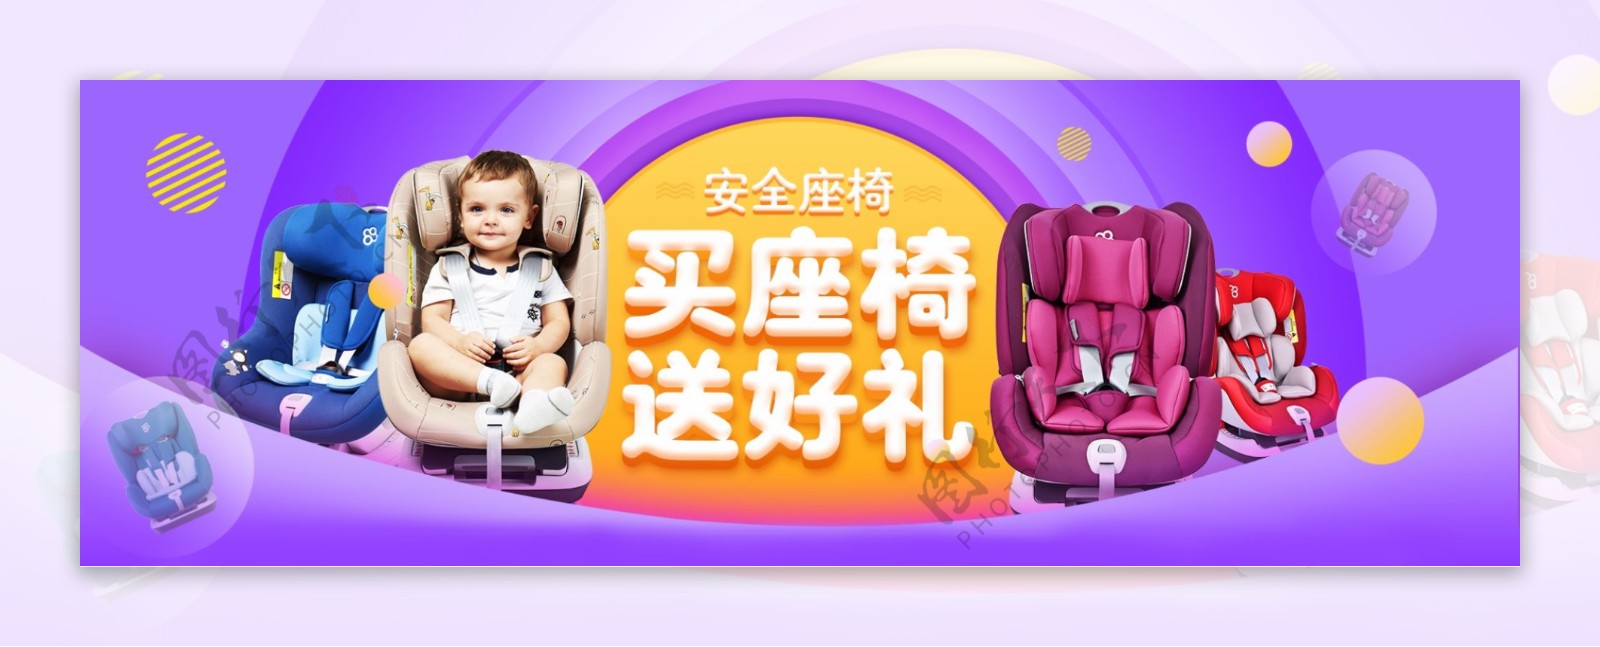 安全座椅母婴车床宝宝淘宝电商促销海报模版